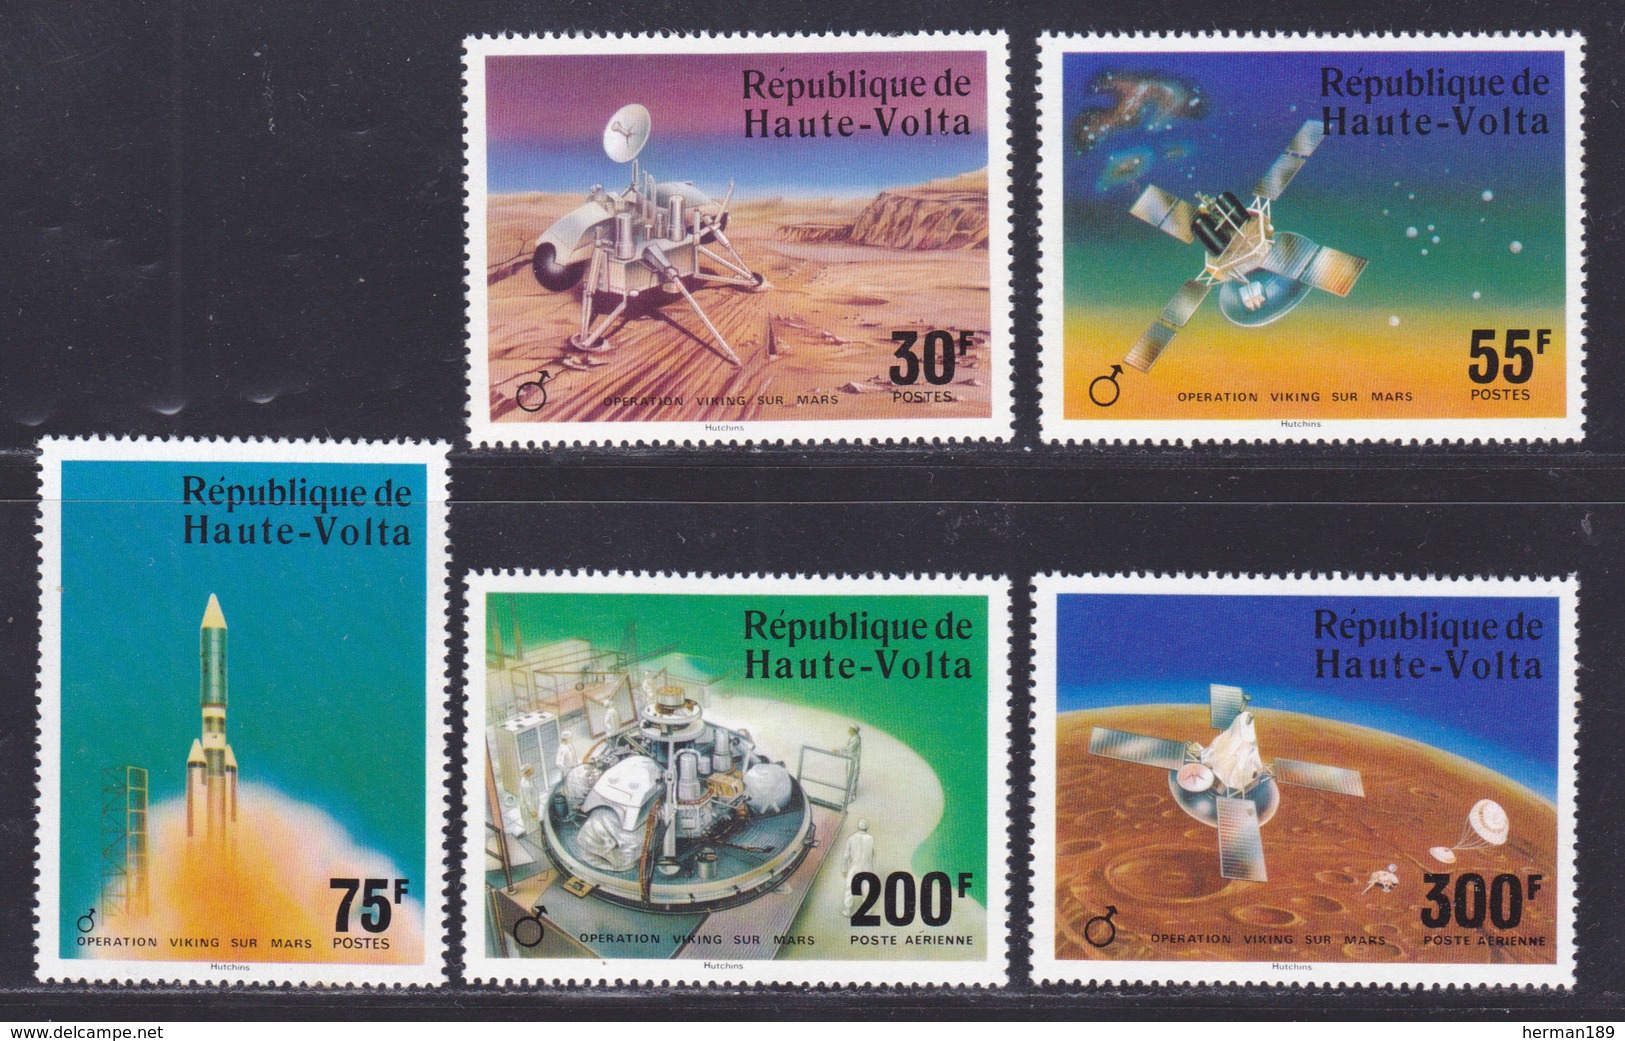 HAUTE-VOLTA N°  388 à 390, AERIENS 208 & 209 ** MNH Neufs Sans Charnière, TB (D7936) Cosmos, Viking Sur Mars - 1976 - Haute-Volta (1958-1984)